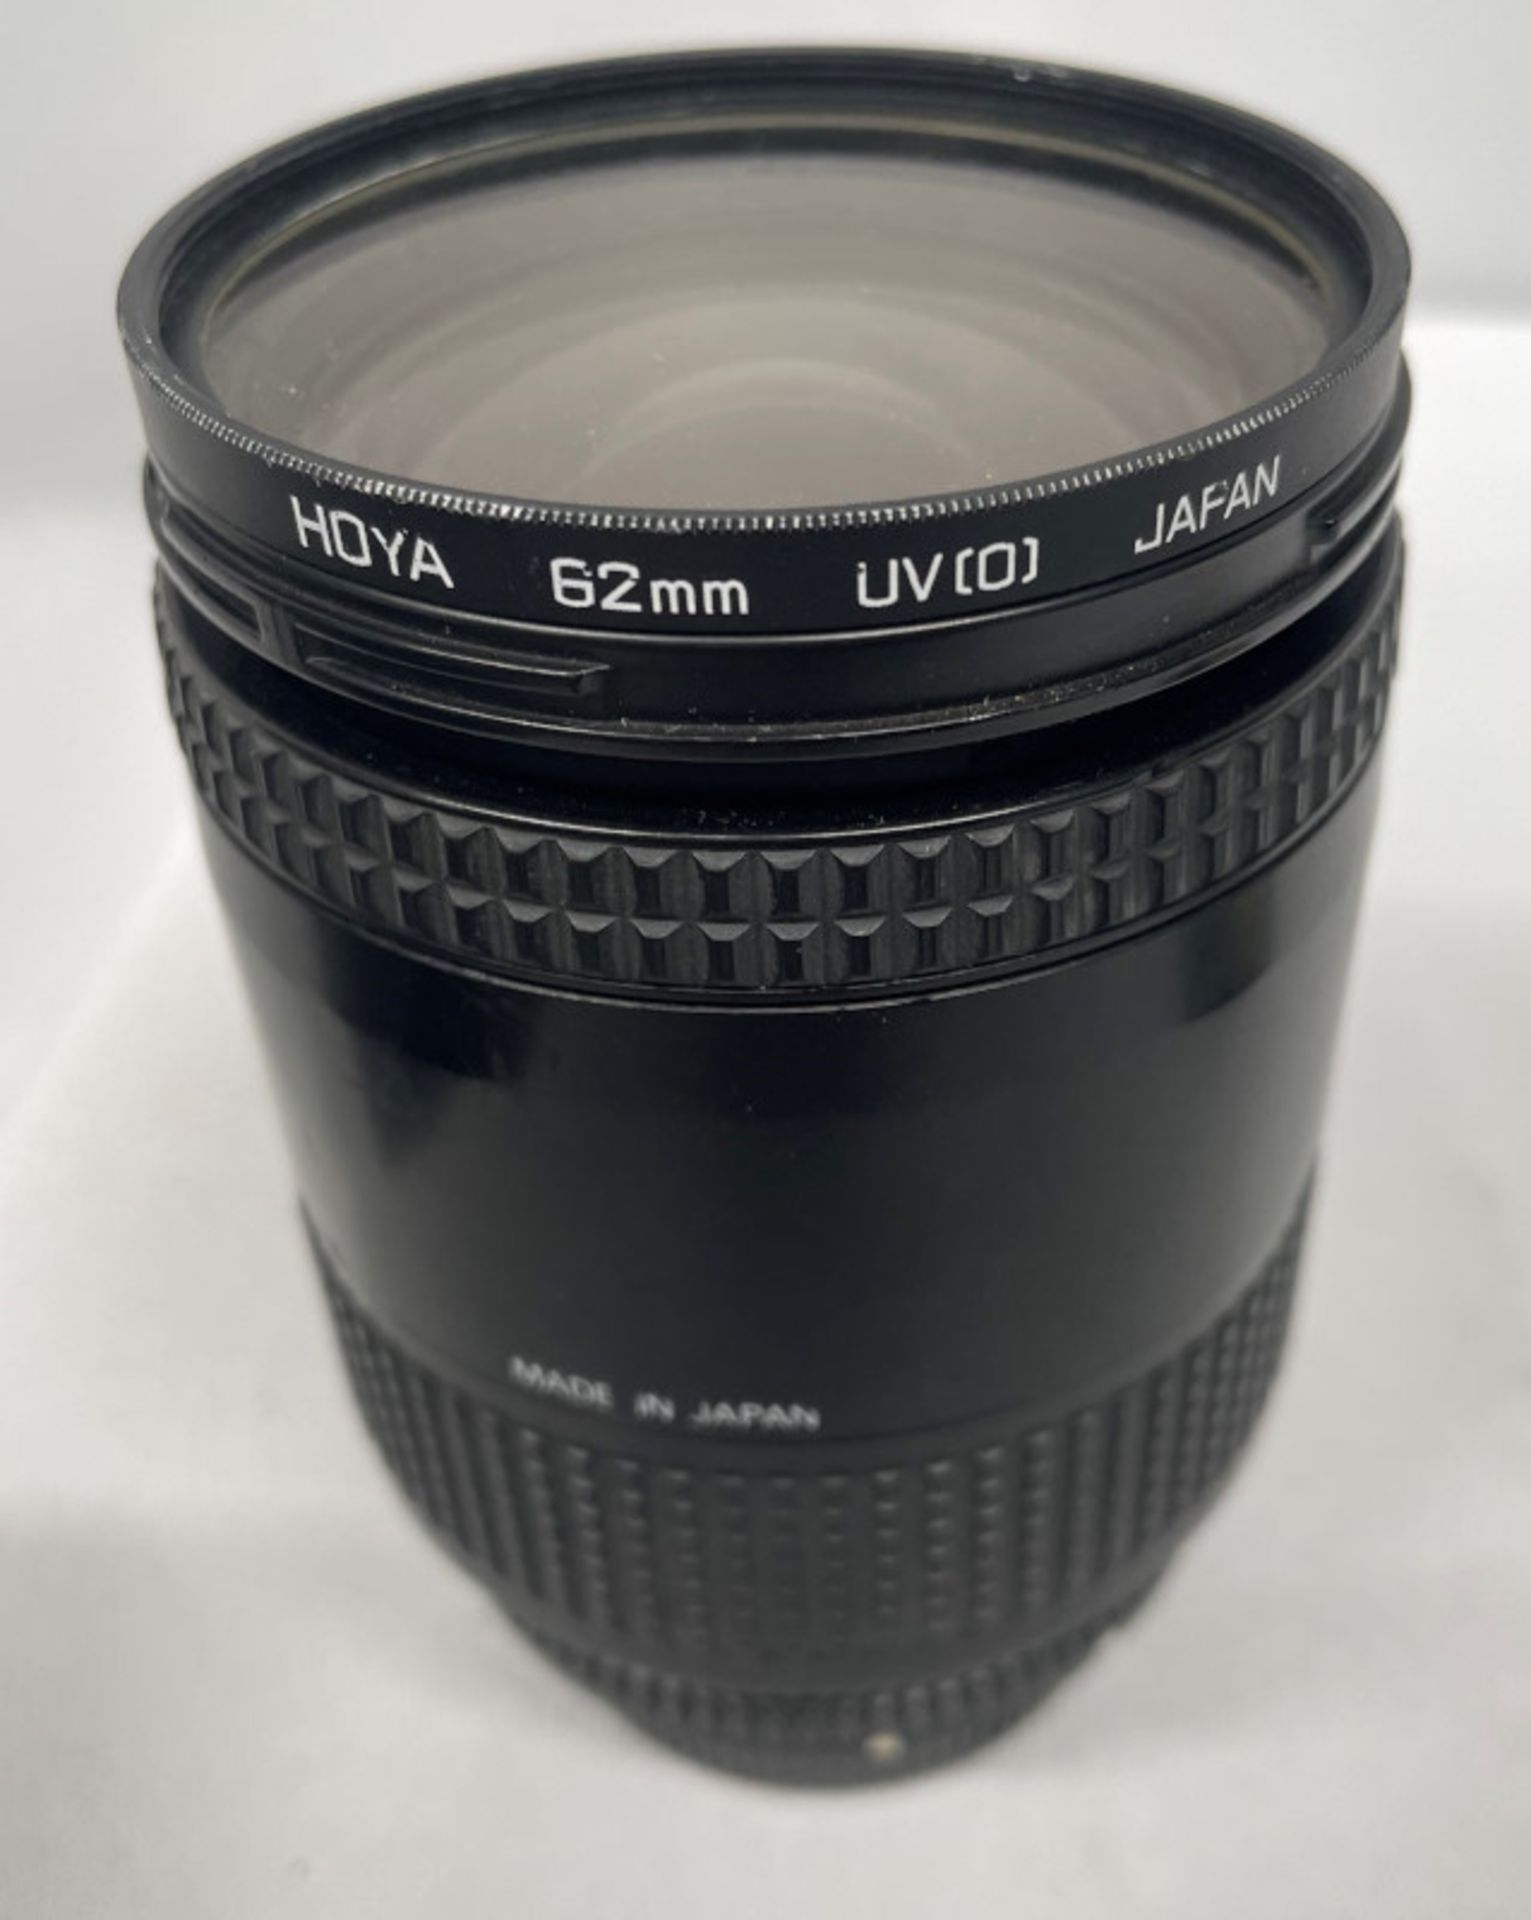 Nikon AF Nikkor 28-85mm - 1:3.5-4.5 Lens - Serial No. 3127731 with HOYA 62mm UV(O) Filter - Image 5 of 7